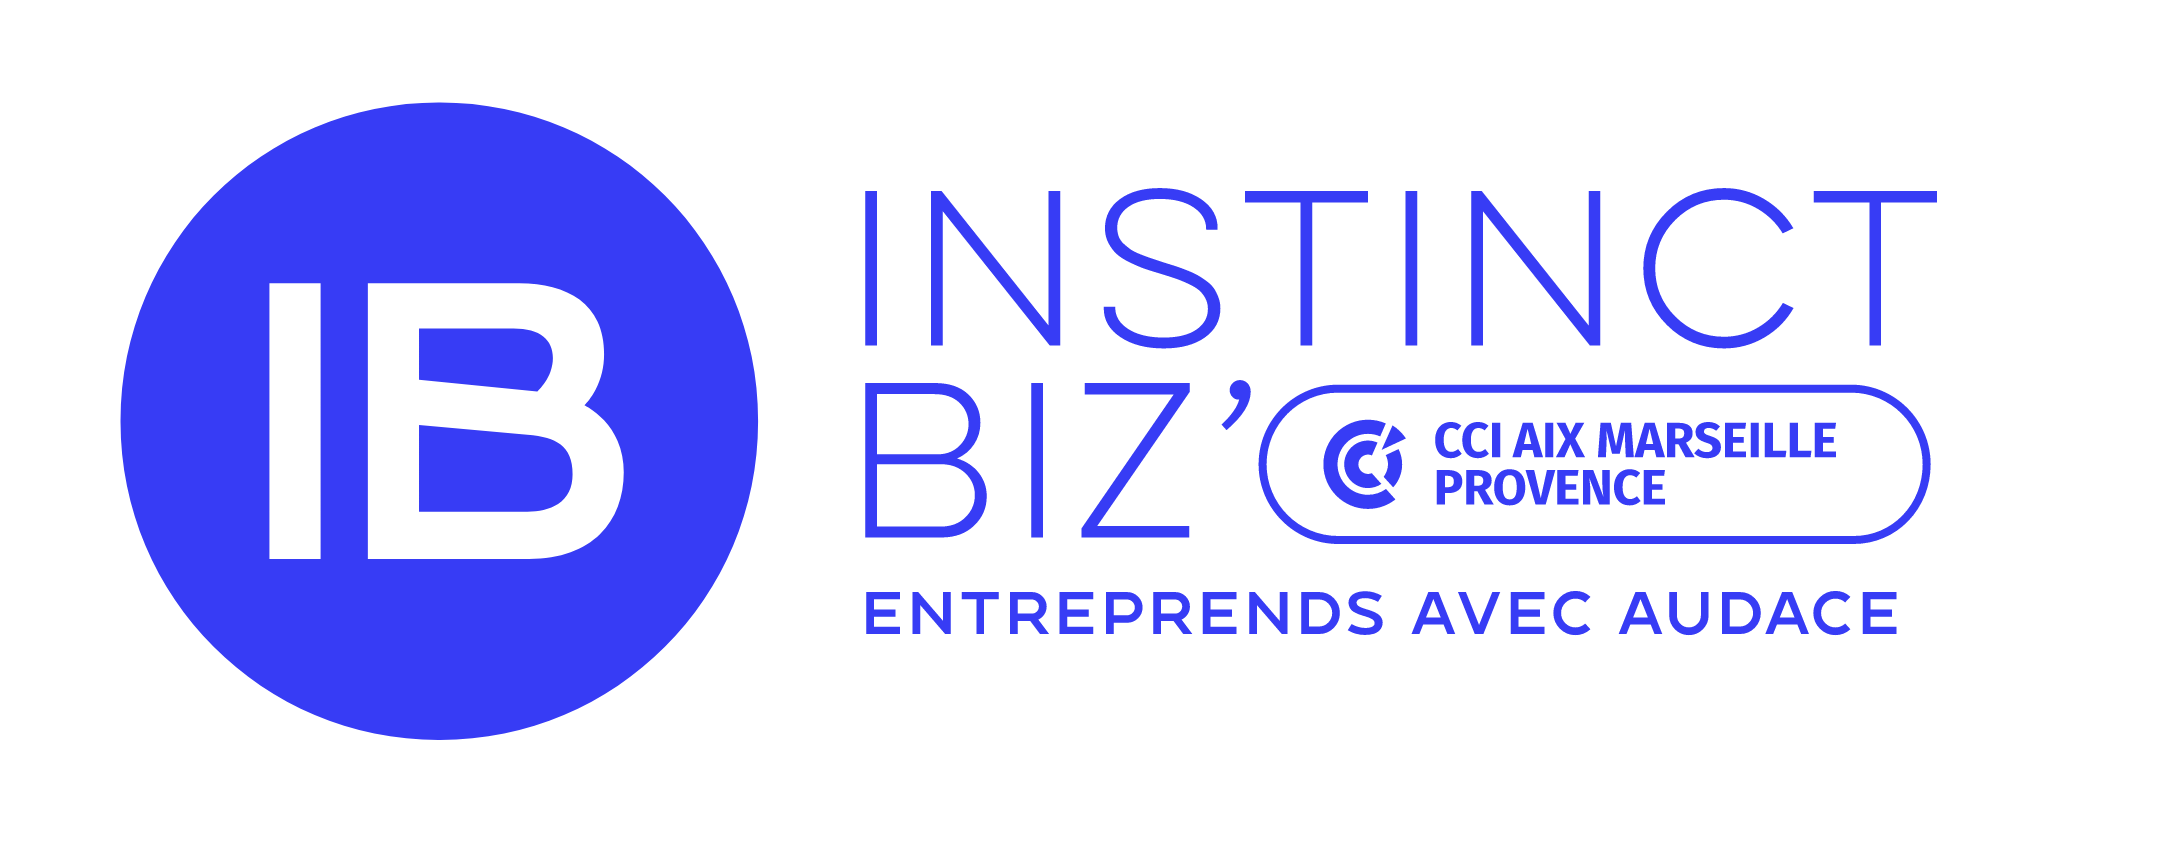 logo IB Instinct Biz